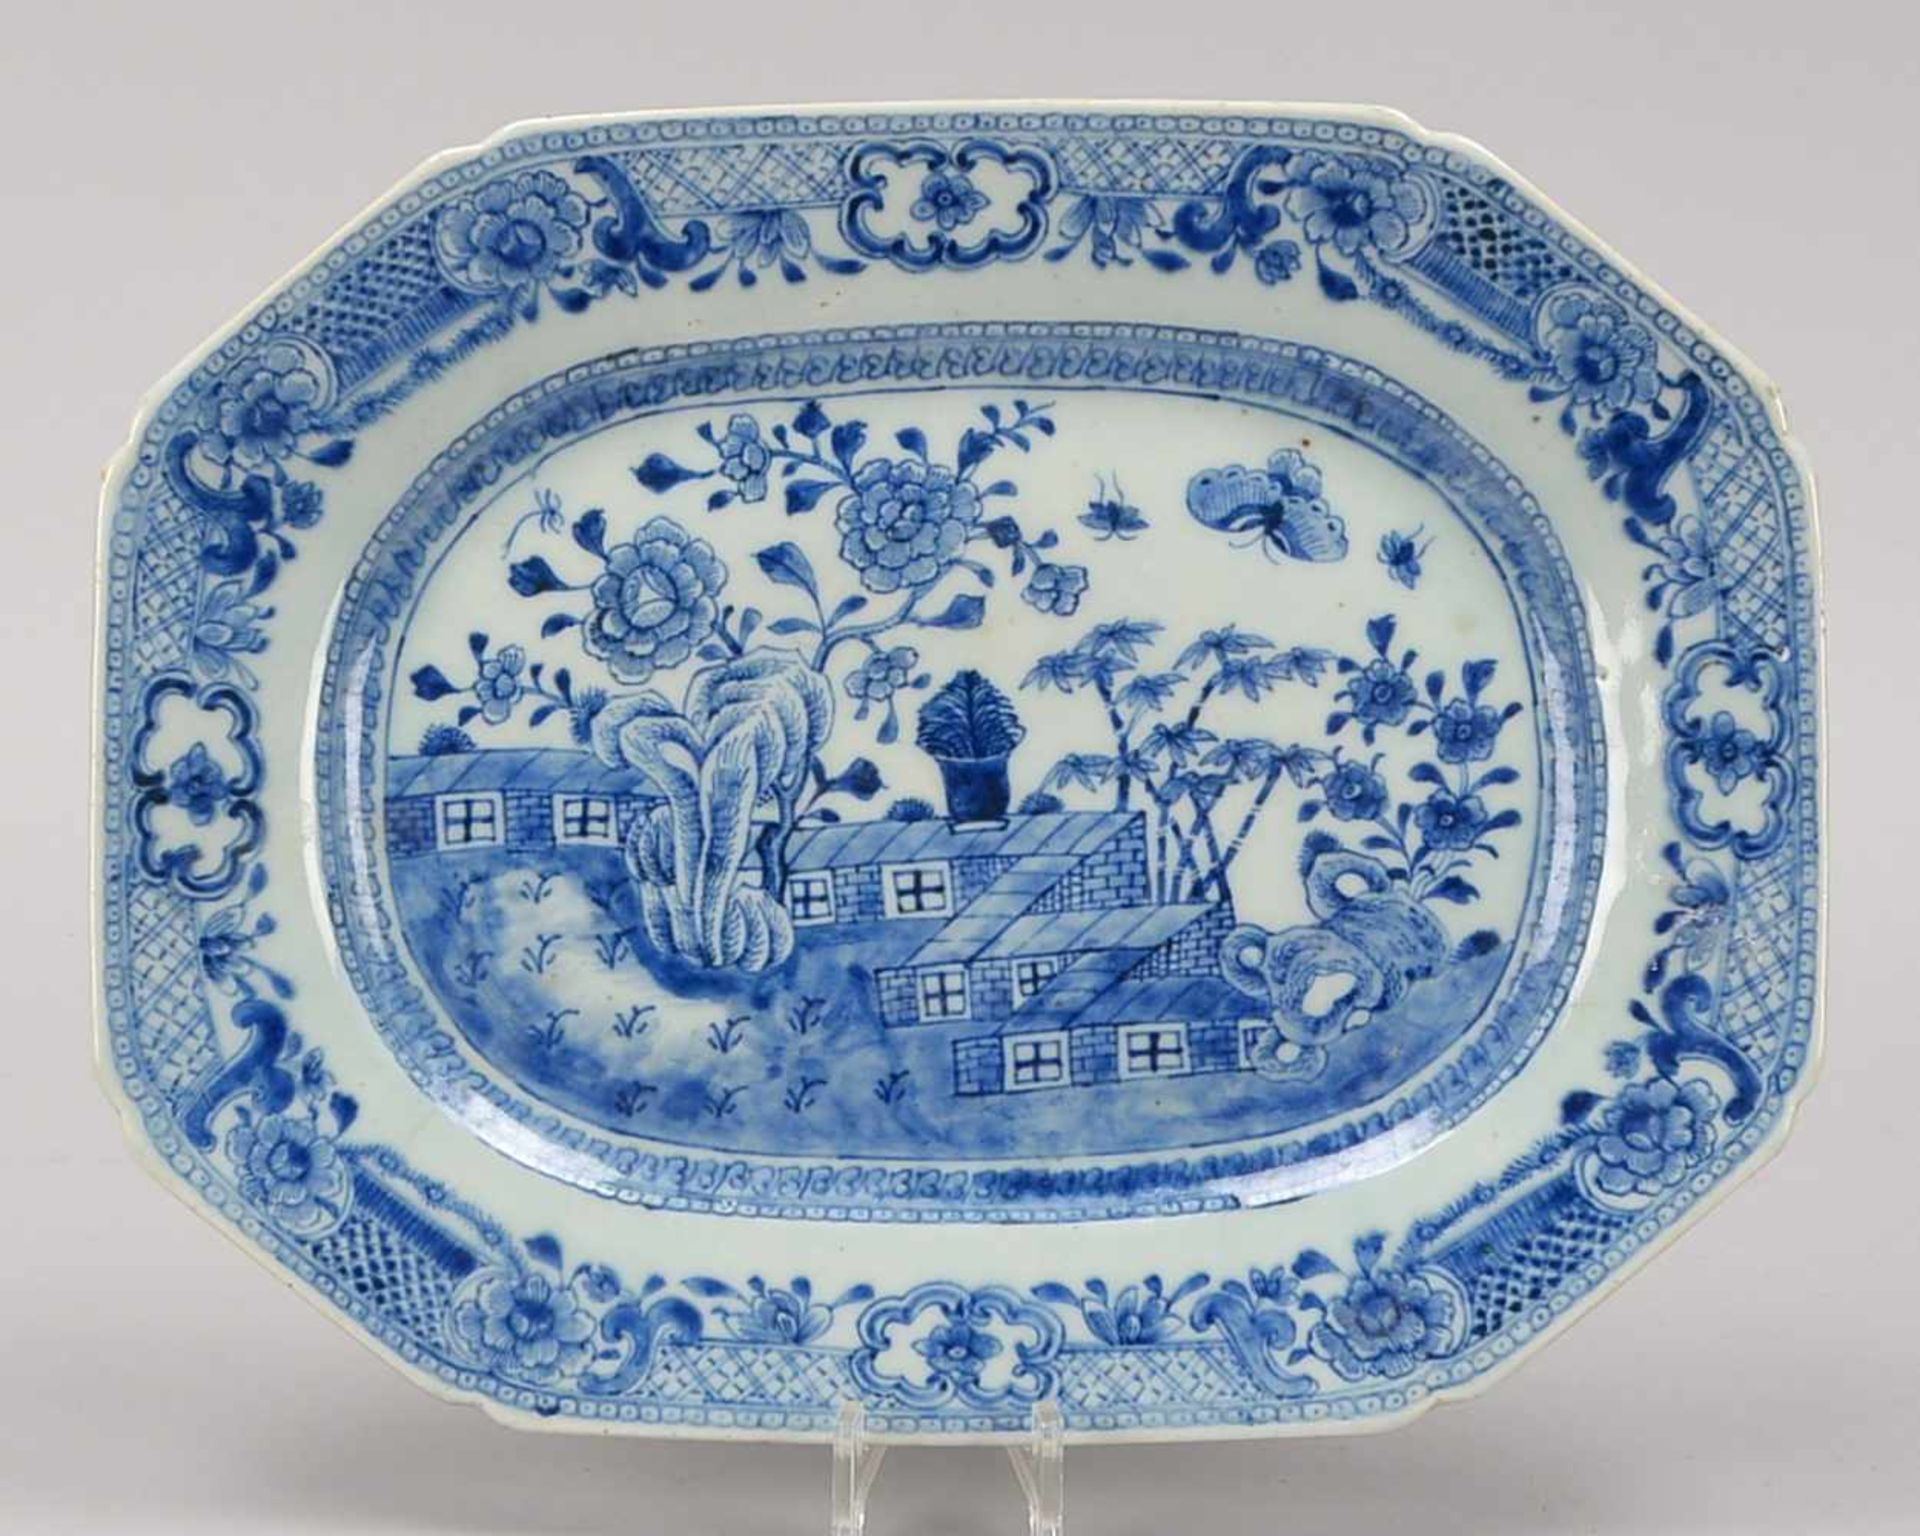 Porzellanplatte, China/18. Jahrhundert, 8-passige Form, blaue Unterglasurmalerei (florale und